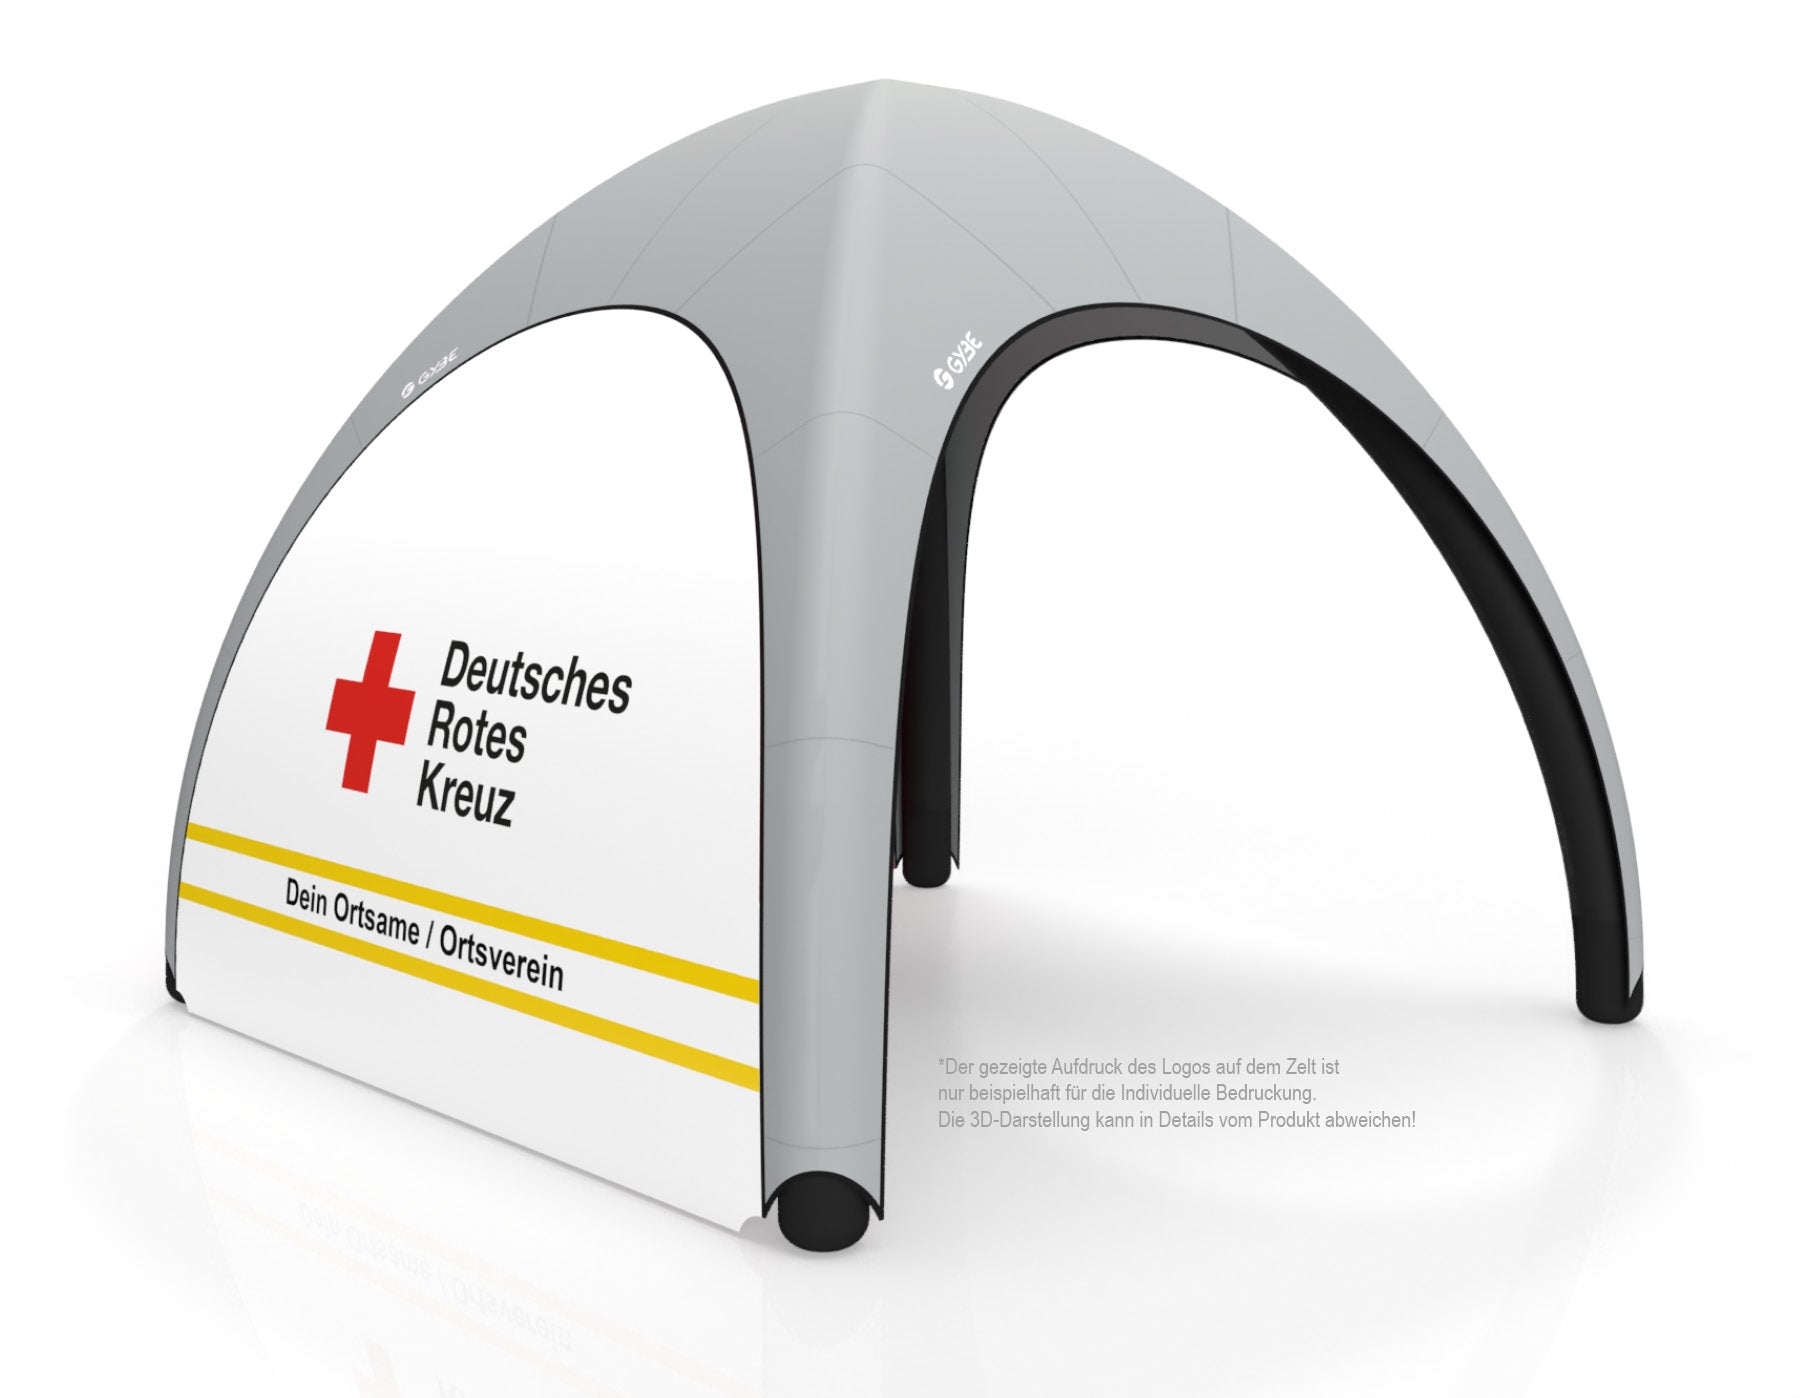 Aufblasbares Schnelleinsatzzelt Gybe Humanity Tent Komplettset mit DRK Logo und Ortsname | Sanitätszelt | Einsatzzelt